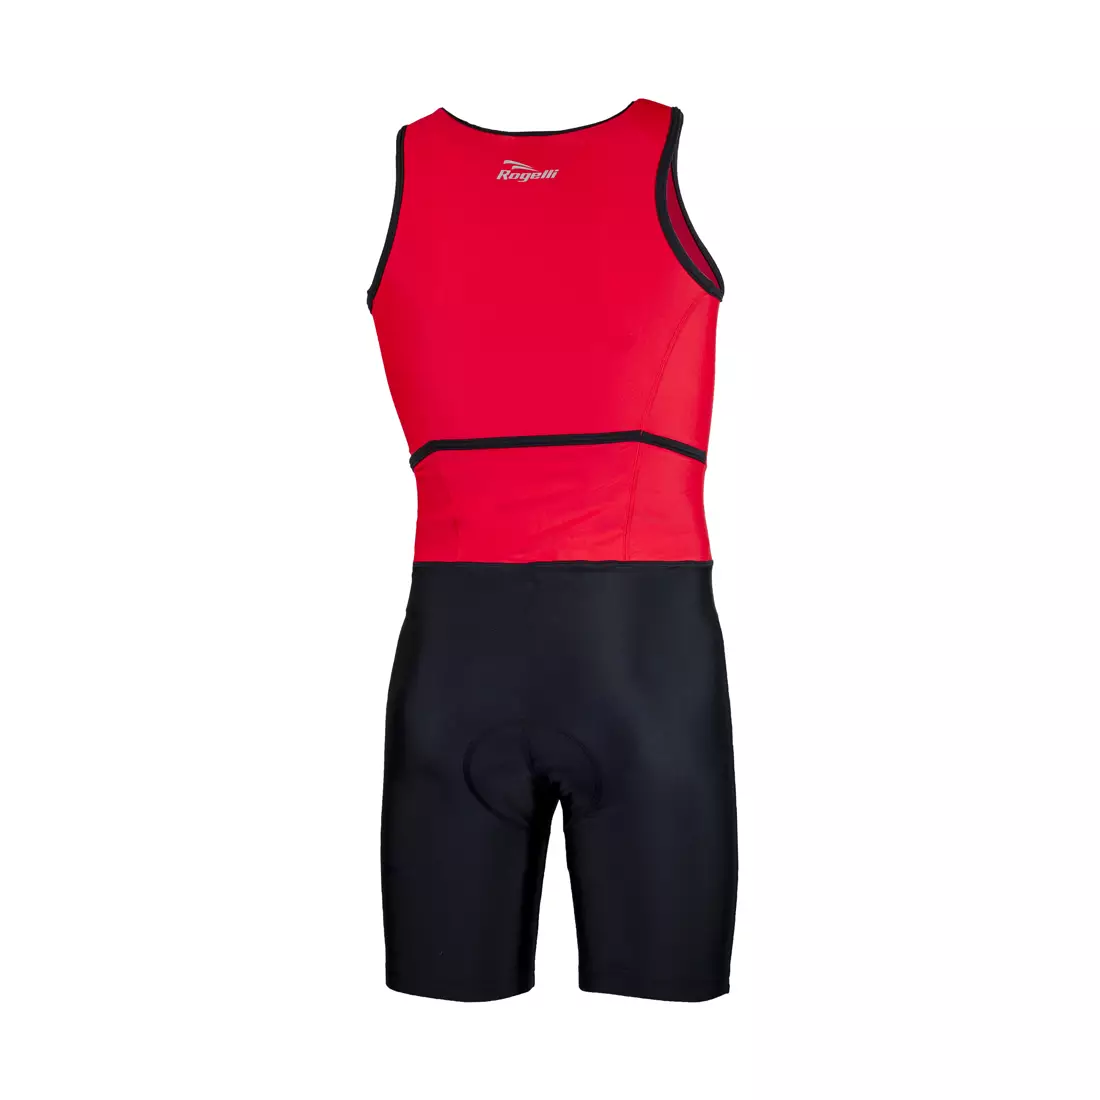 ROGELLI TRI FLORIDA 030.001 pánsky triatlonový outfit, červený a čierny